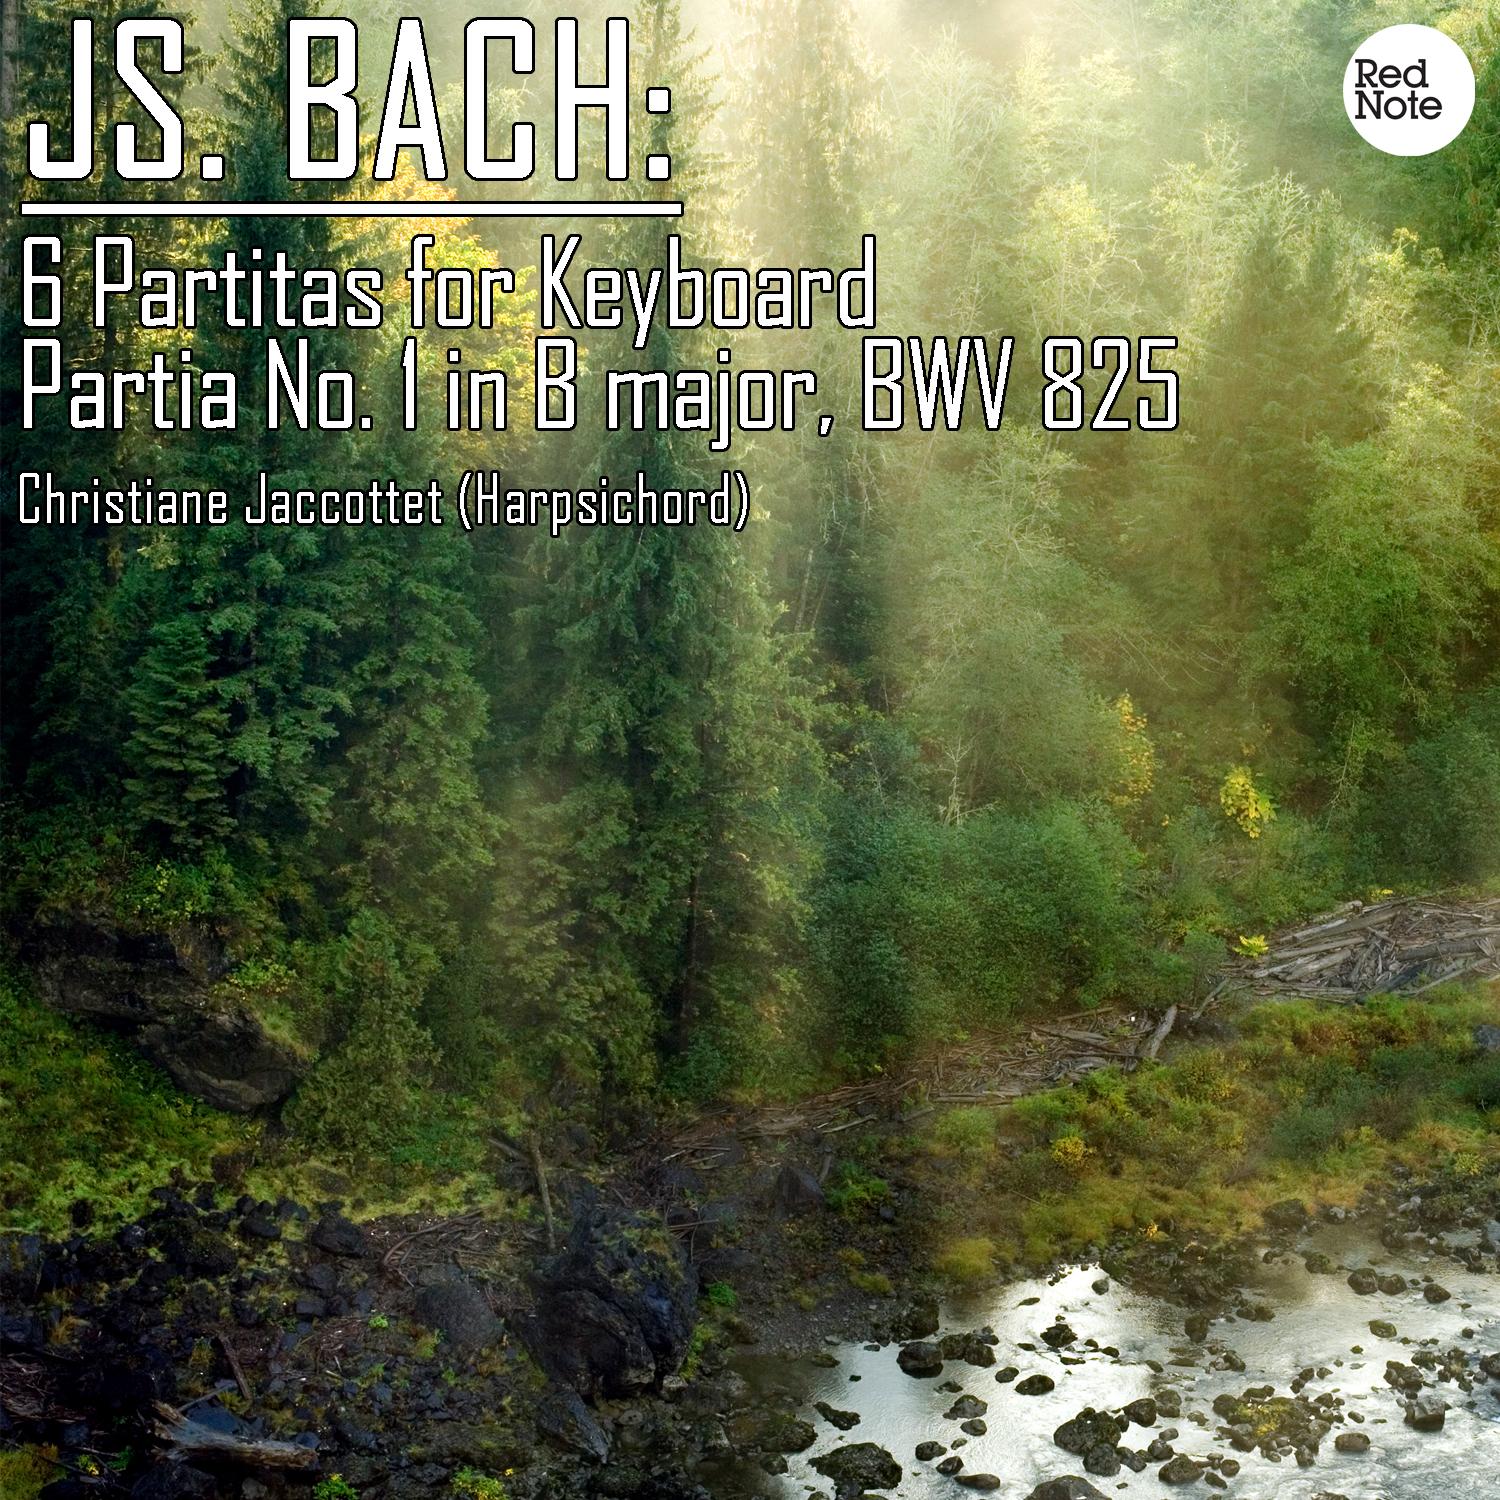 6 Partitas for Keyboard - No. 1 in B Flat major, BWV 825: I. Praeludium